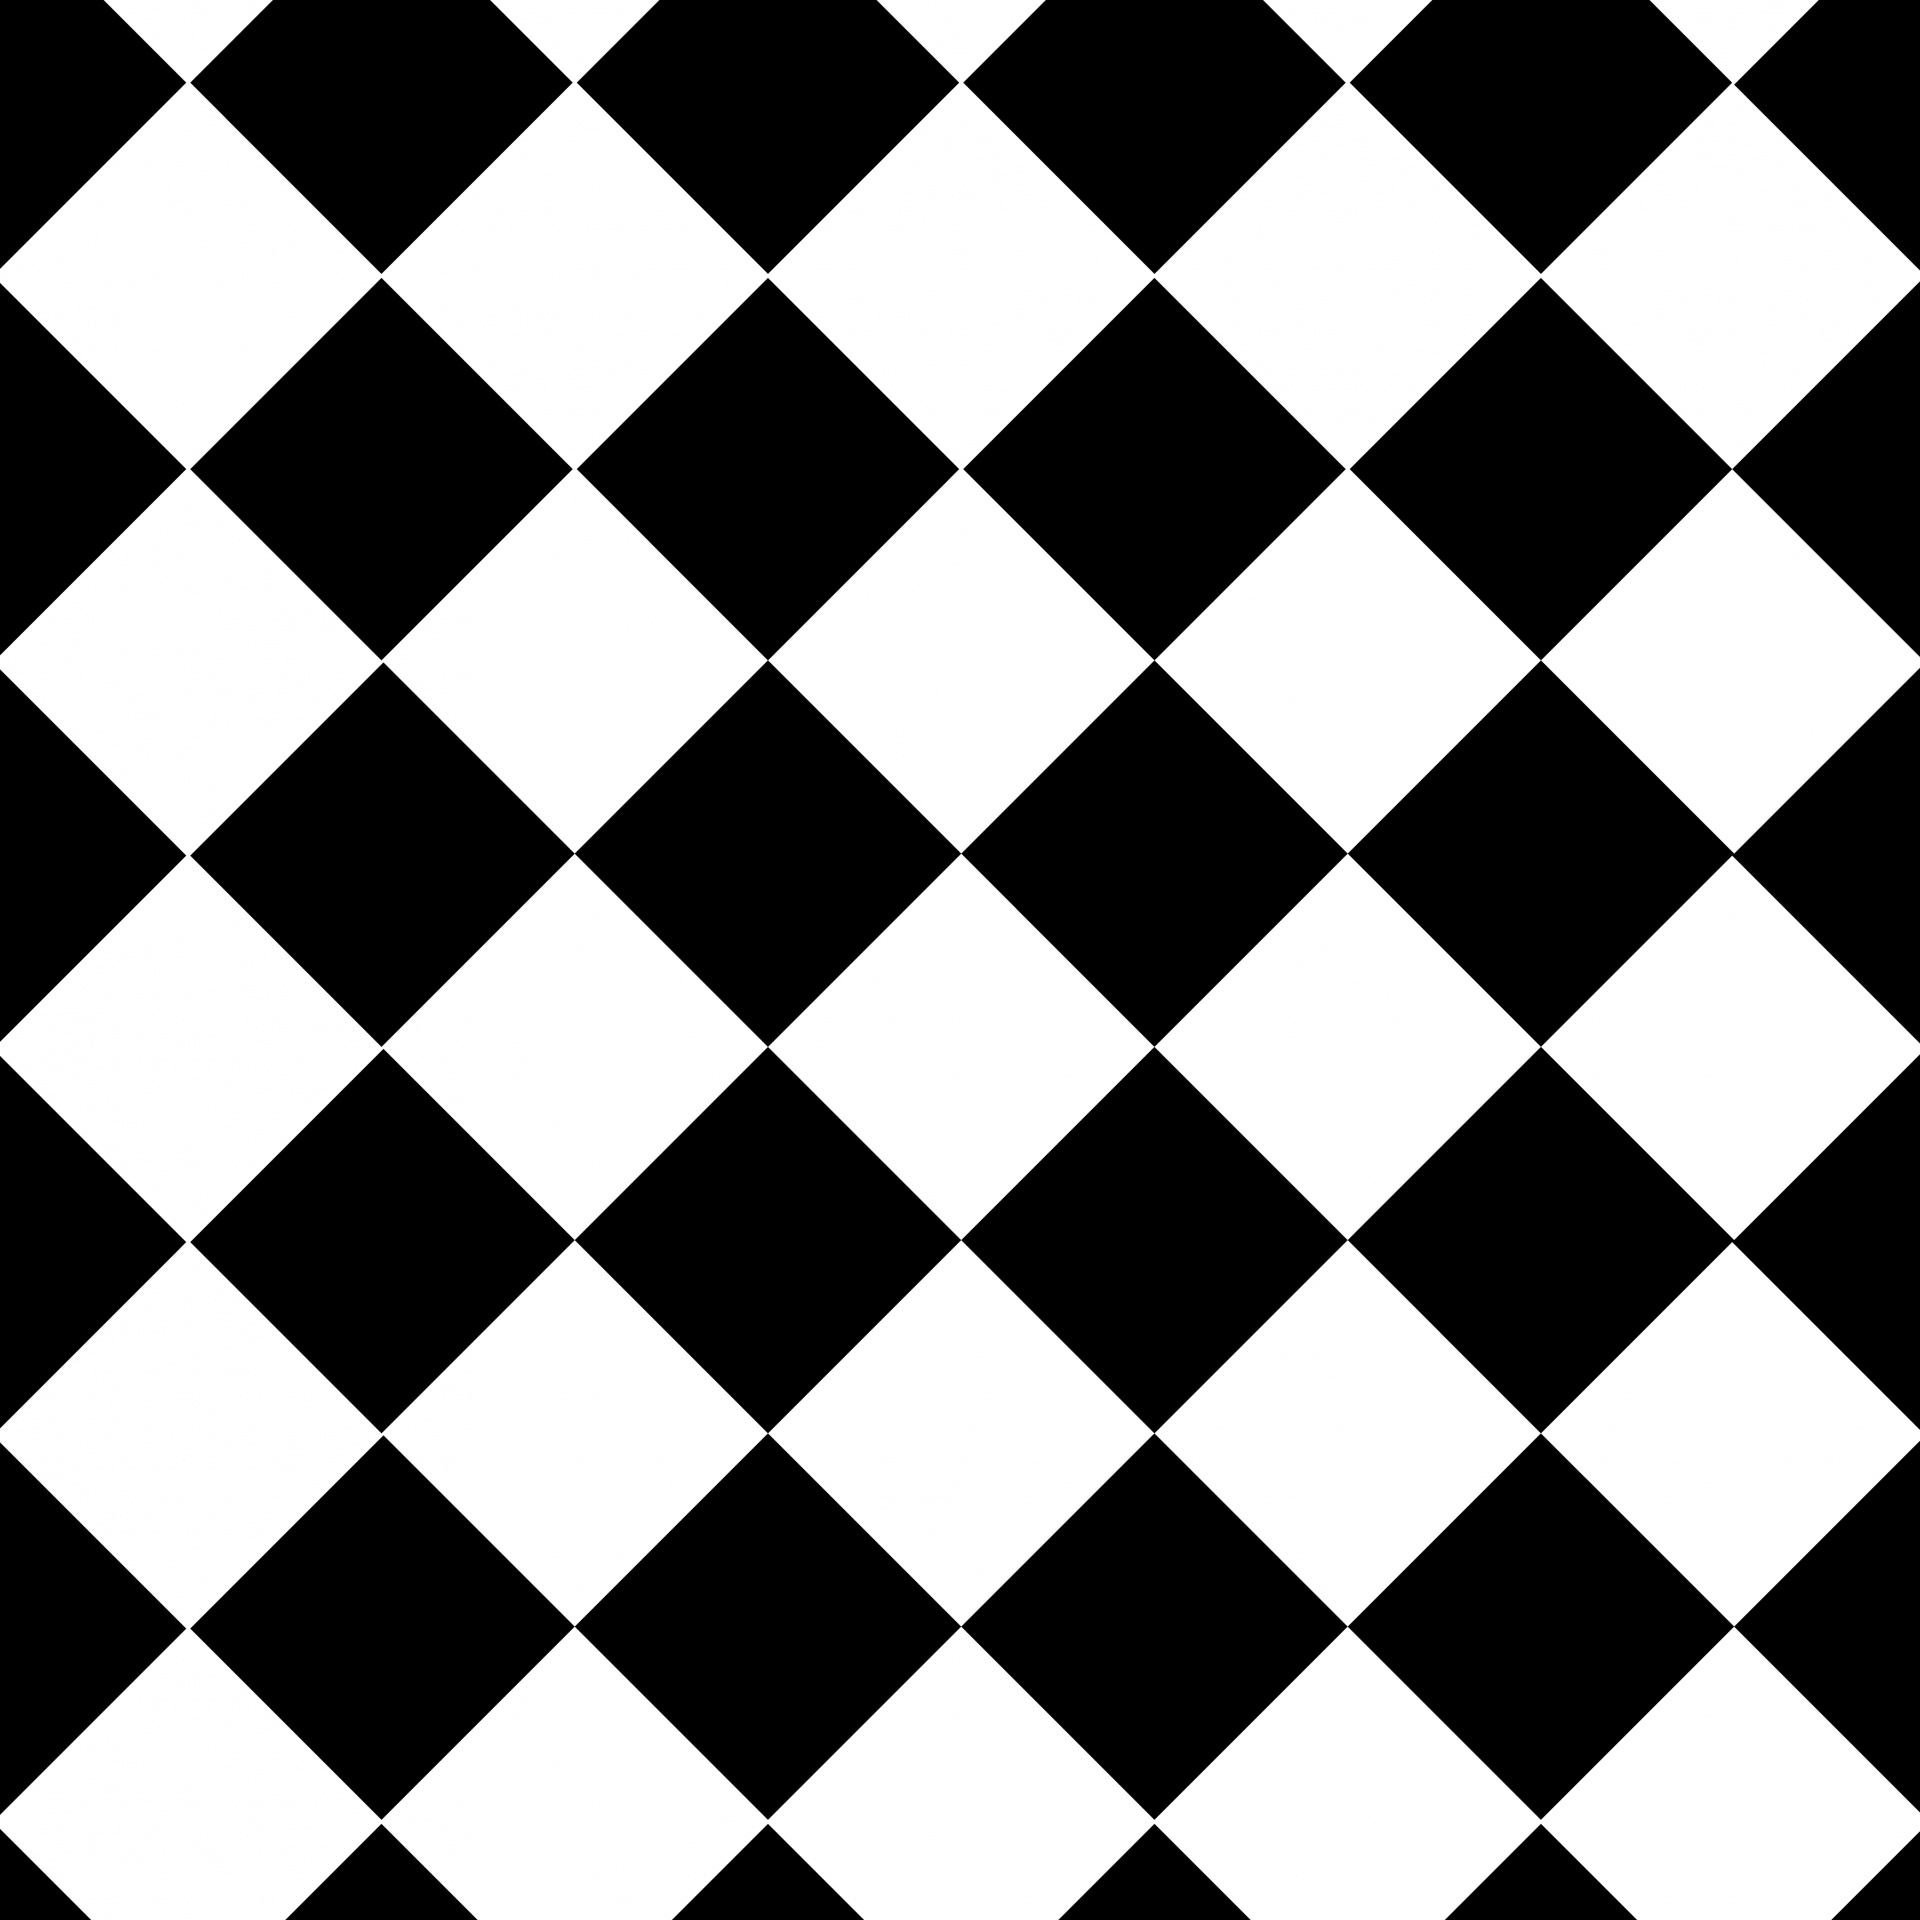 papel tapiz de patrón de mosaico,negro,modelo,en blanco y negro,fotografía monocroma,juegos